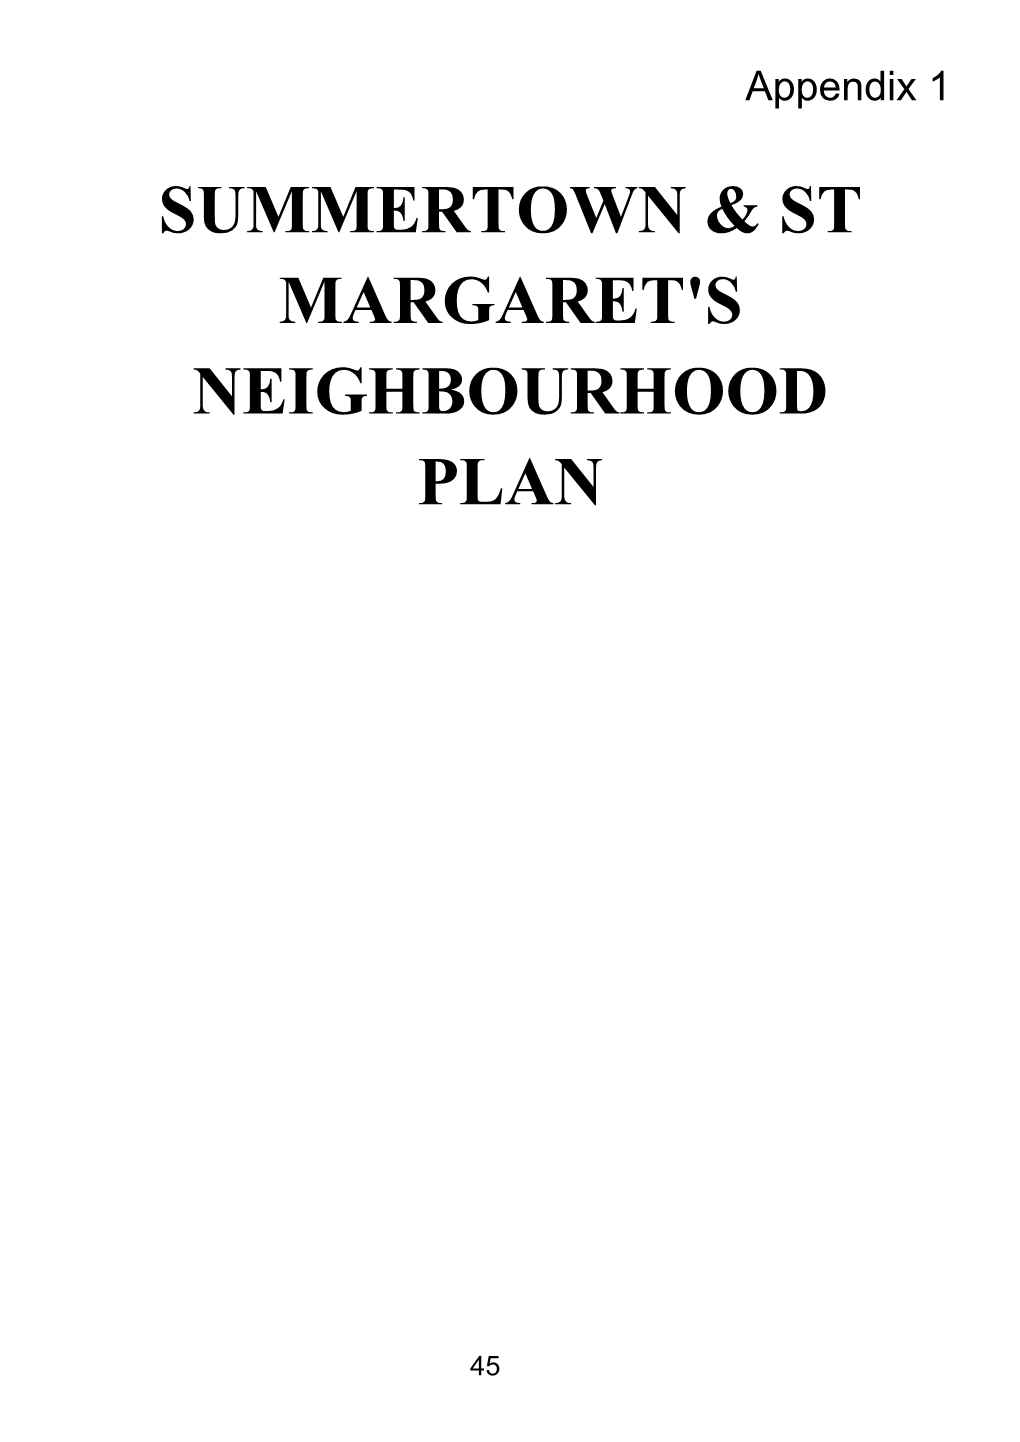 Summertown & St Margaret's Neighbourhood Plan